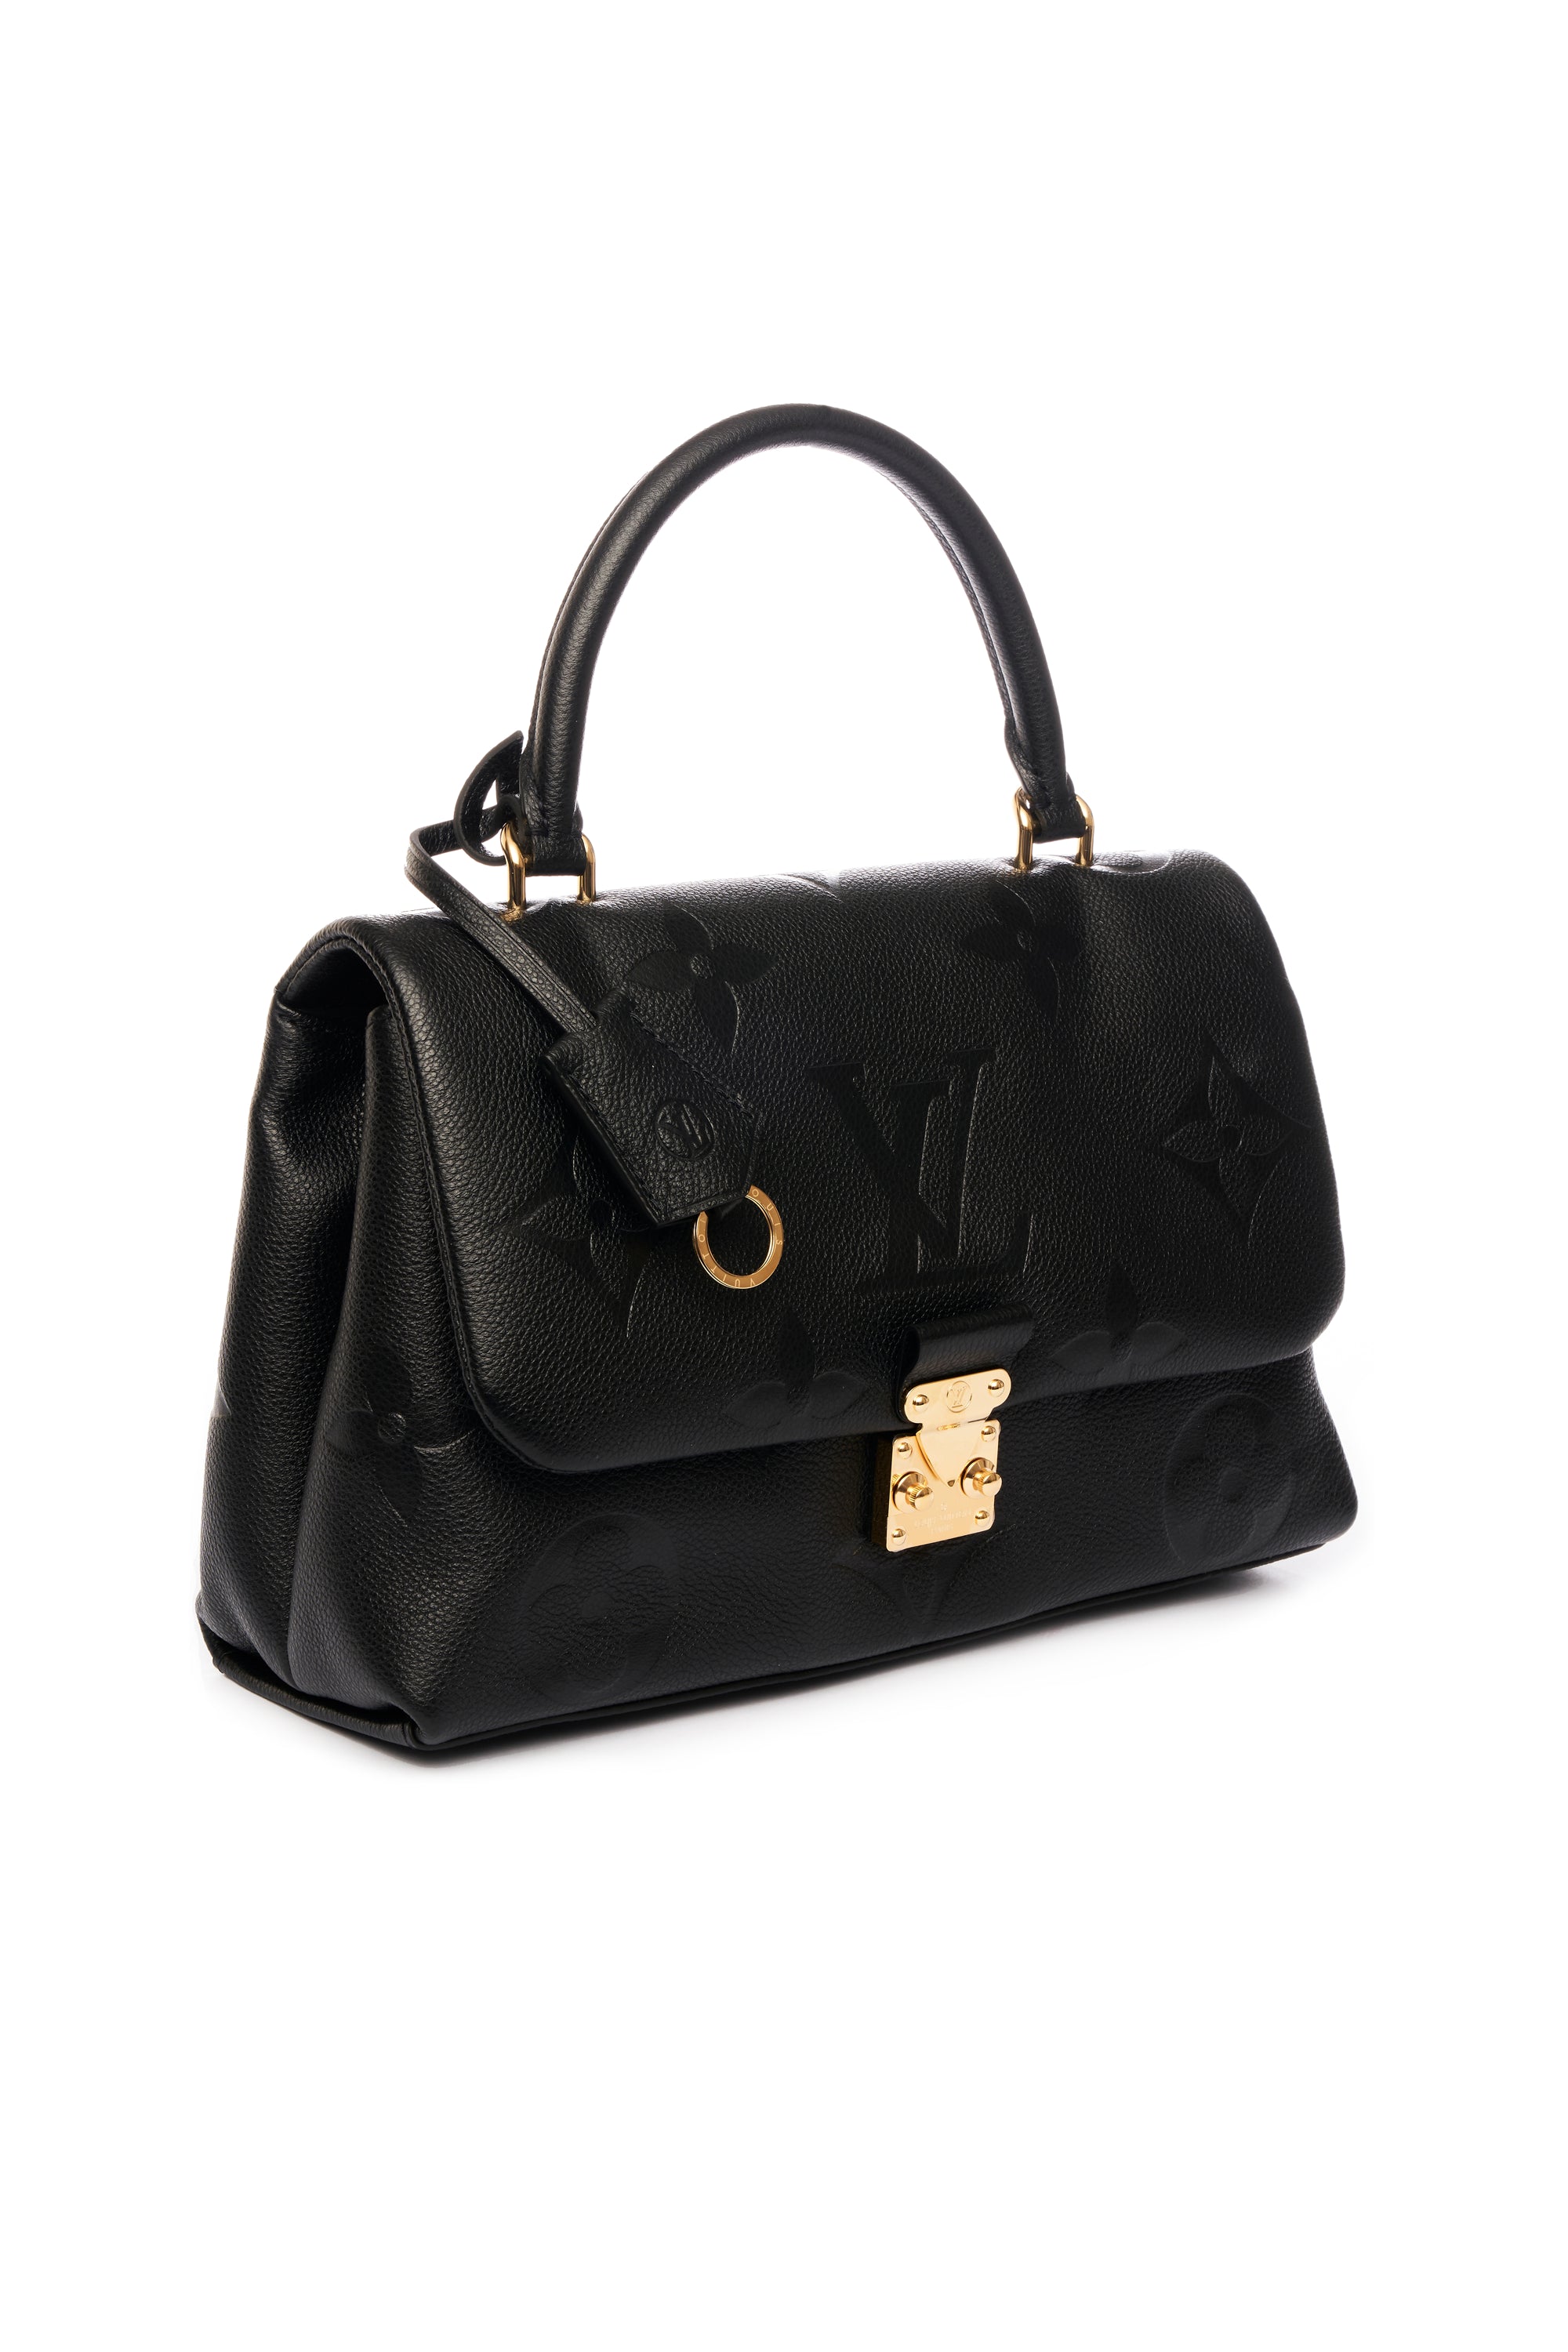 Louis Vuitton Madeline Size MM Empreinte Noir Purse - Foxy Couture Carmel